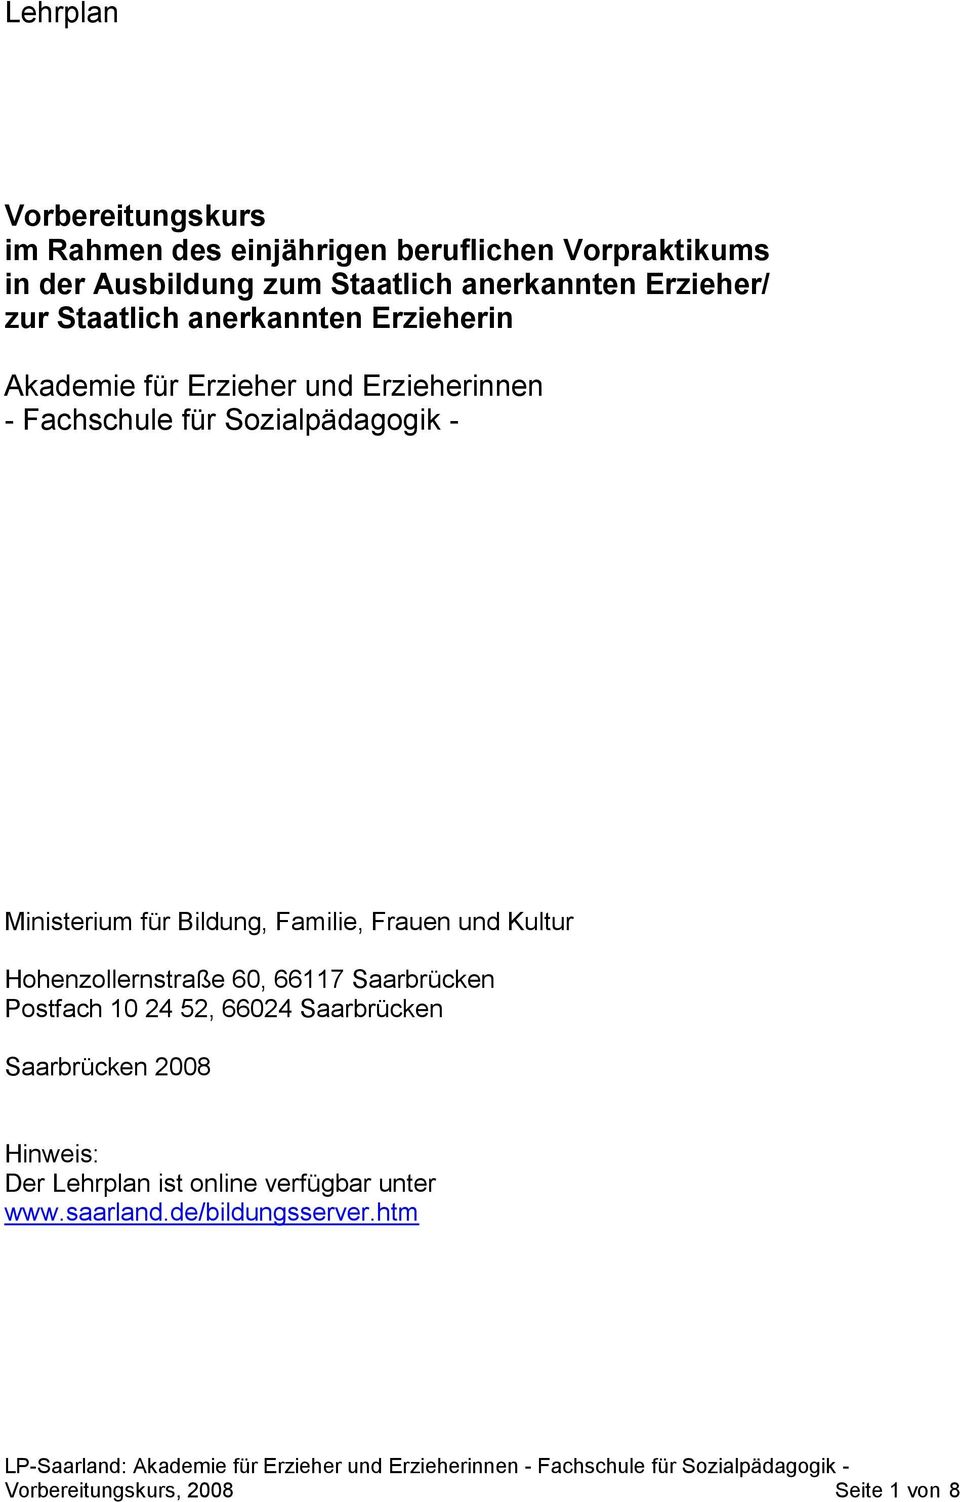 Ministerium für Bildung, Familie, Frauen und Kultur Hohenzollernstraße 60, 66117 Saarbrücken Postfach 10 24 52, 66024